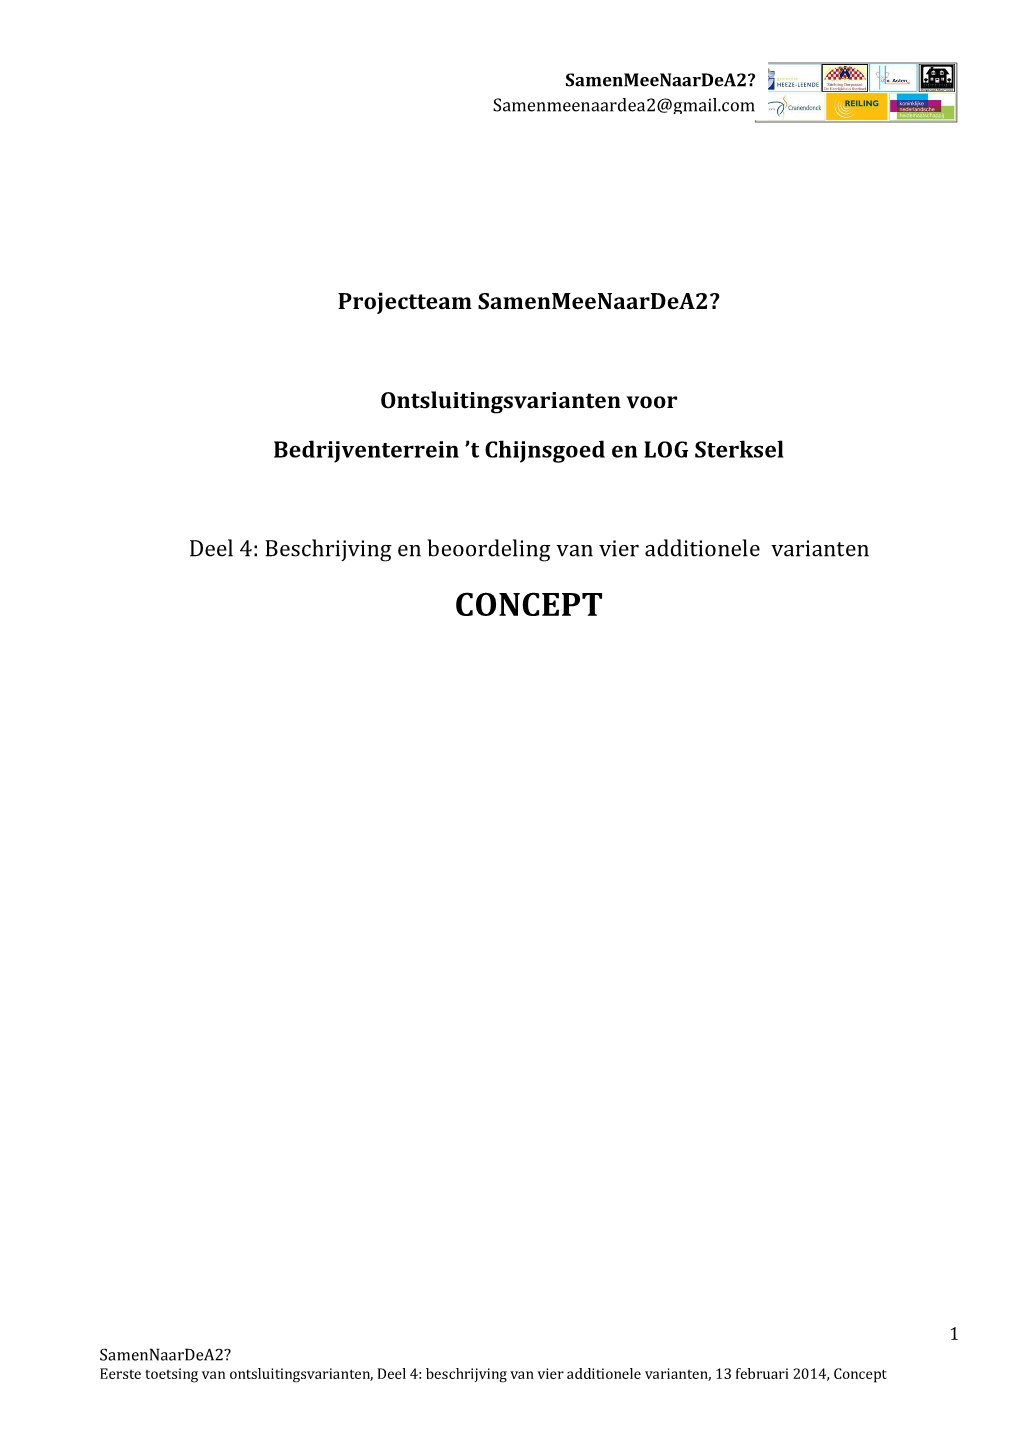 Overzicht Ontsluitingsvarianten - Deel2 Inventarisatie, Samenvoeging En Selectie Ontsluitingsvarianten", 2013